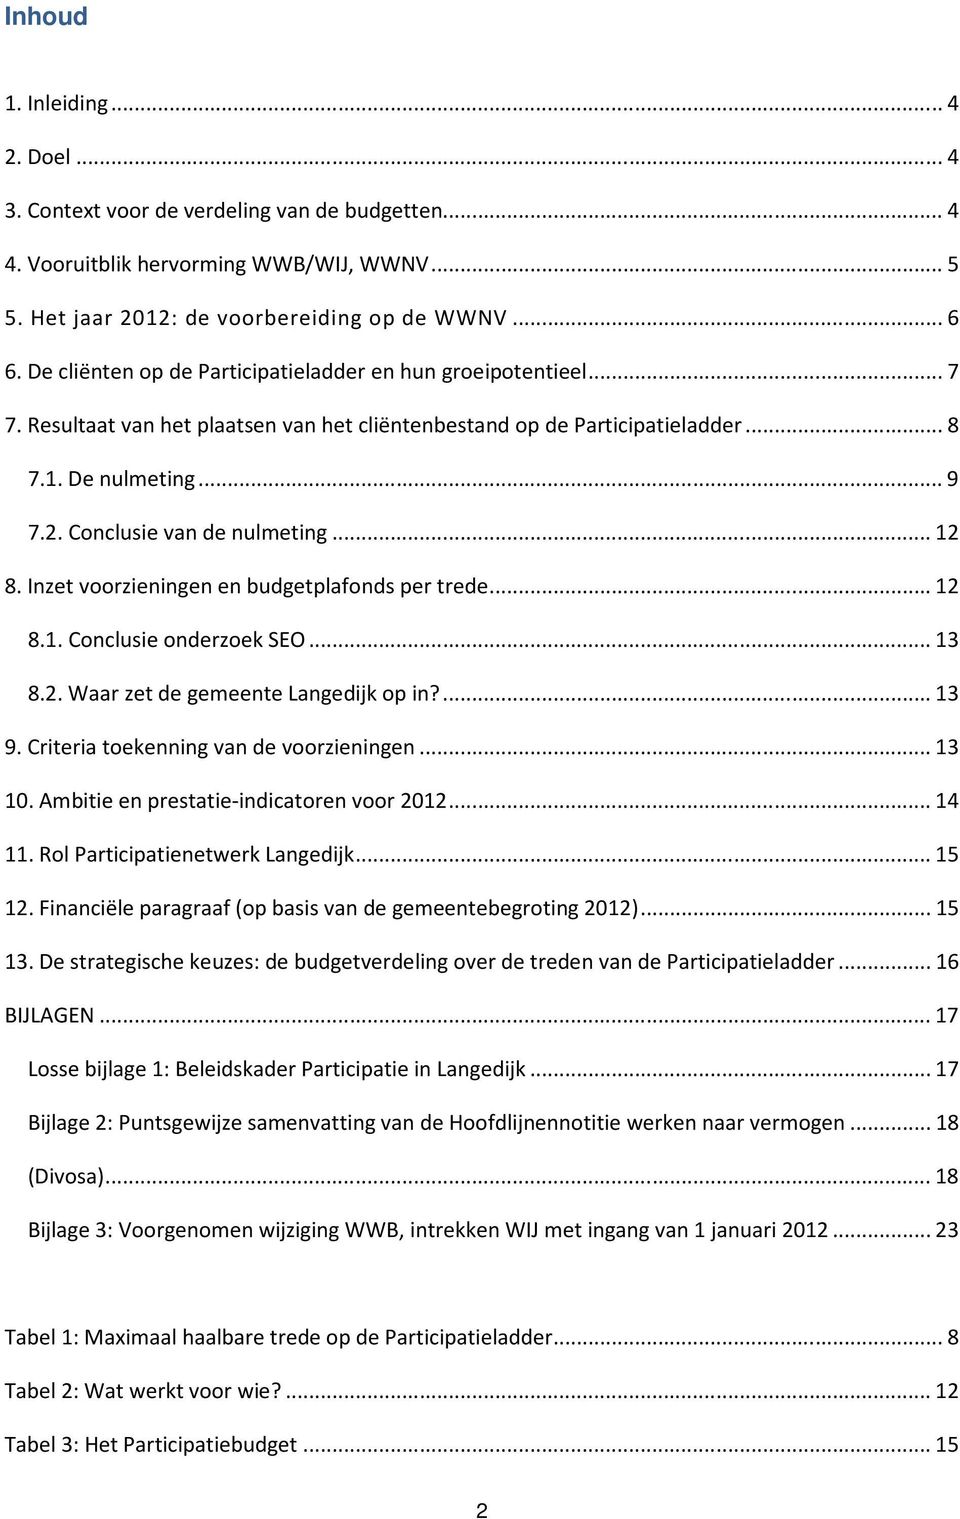 Conclusie van de nulmeting...12 8. Inzet voorzieningen en budgetplafonds per trede...12 8.1. Conclusie onderzoek SEO...13 8.2. Waar zet de gemeente Langedijk op in?...13 9.